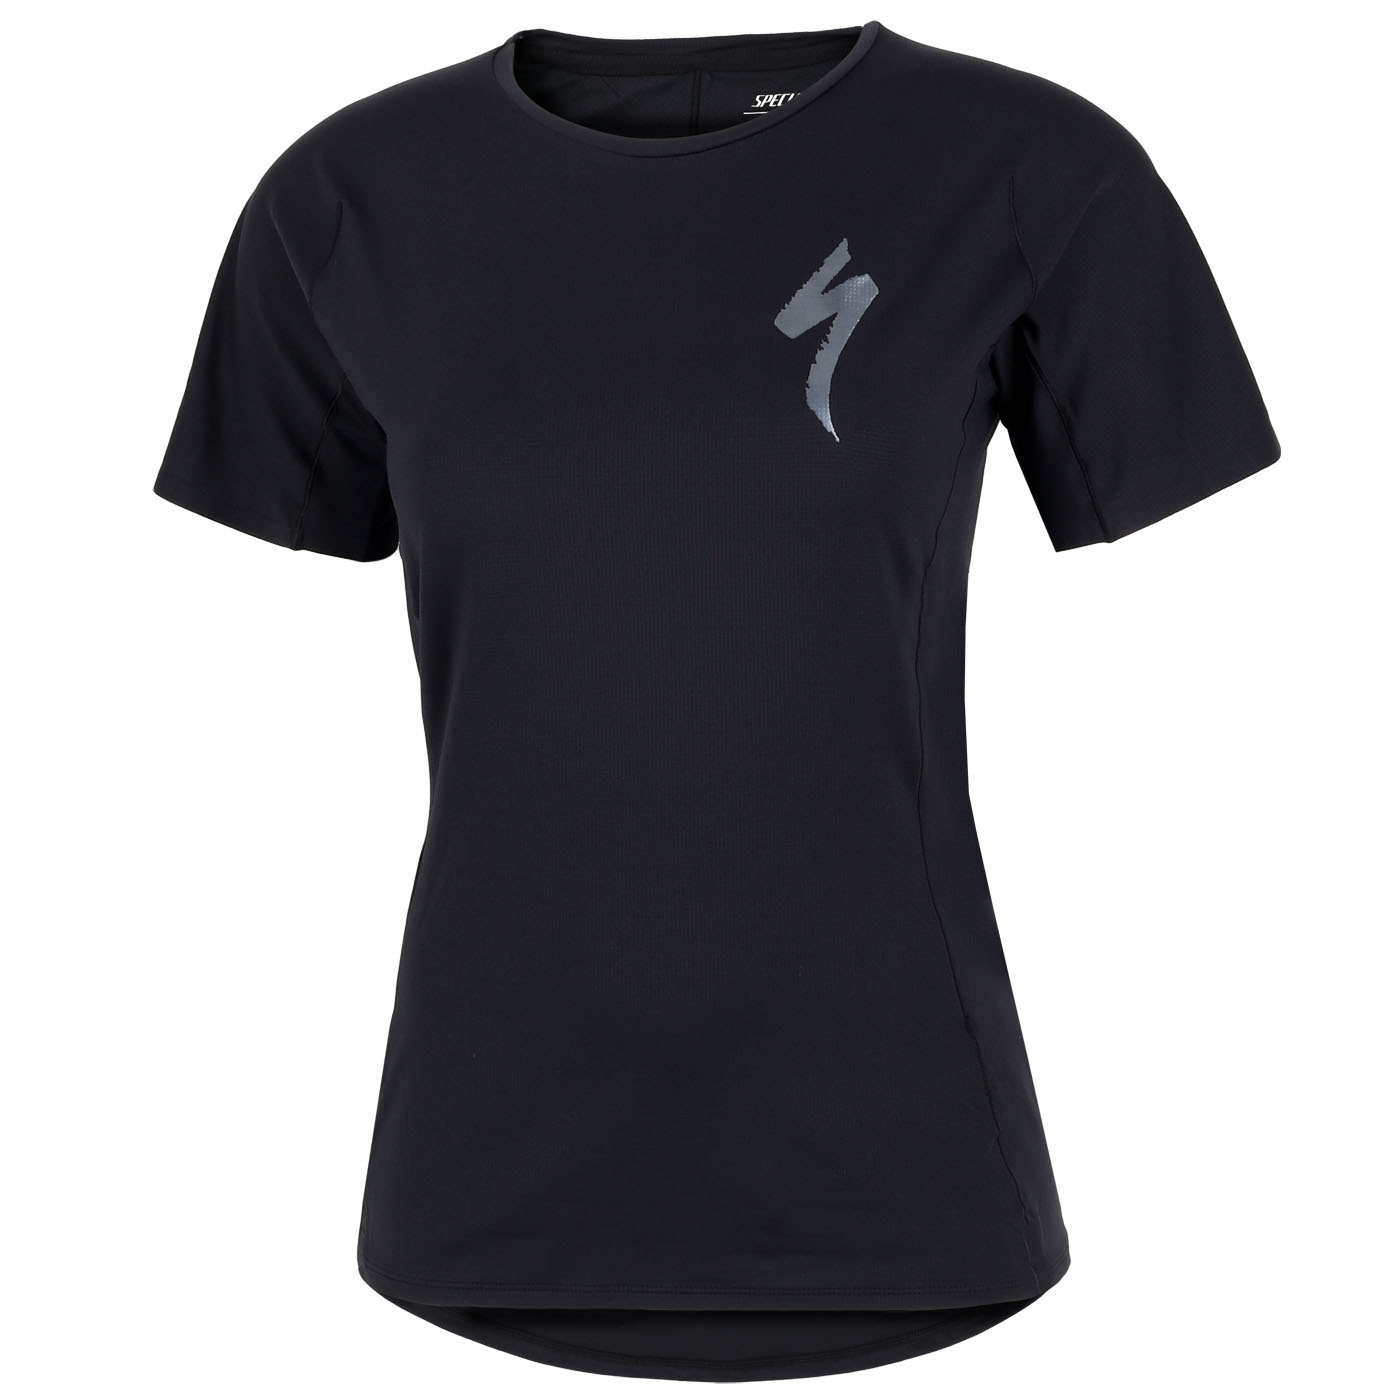 Productfoto van Specialized Trail Air Fietsshirt Dames - zwart